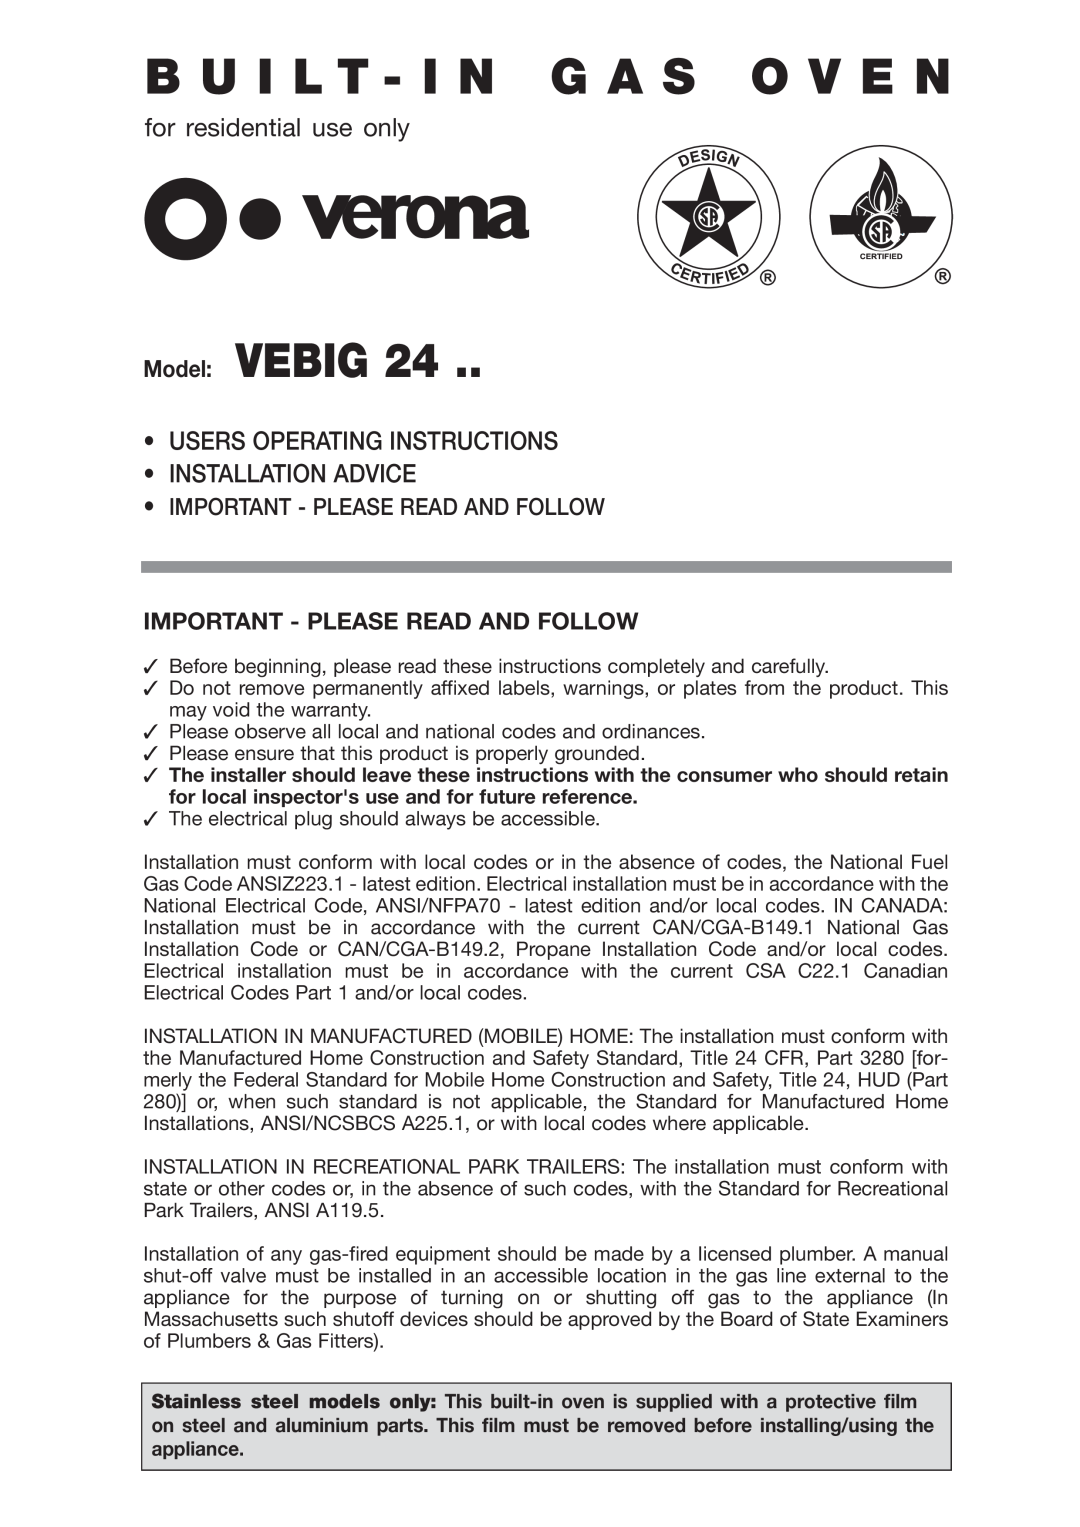 Verona VEBIG24 warranty Important - Please Read And Follow, B U I L T - I N G A S O V E N, Model VEBIG 